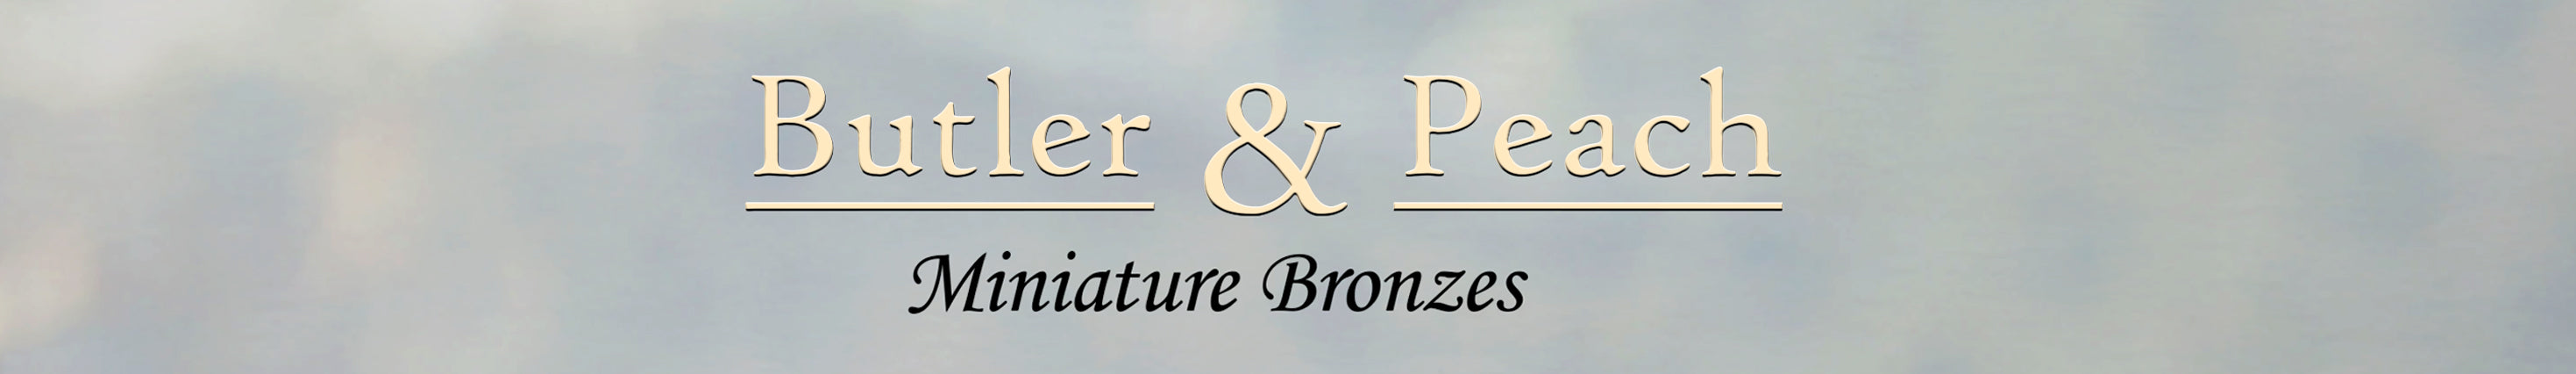 Butler & Peach Miniature Bronzes